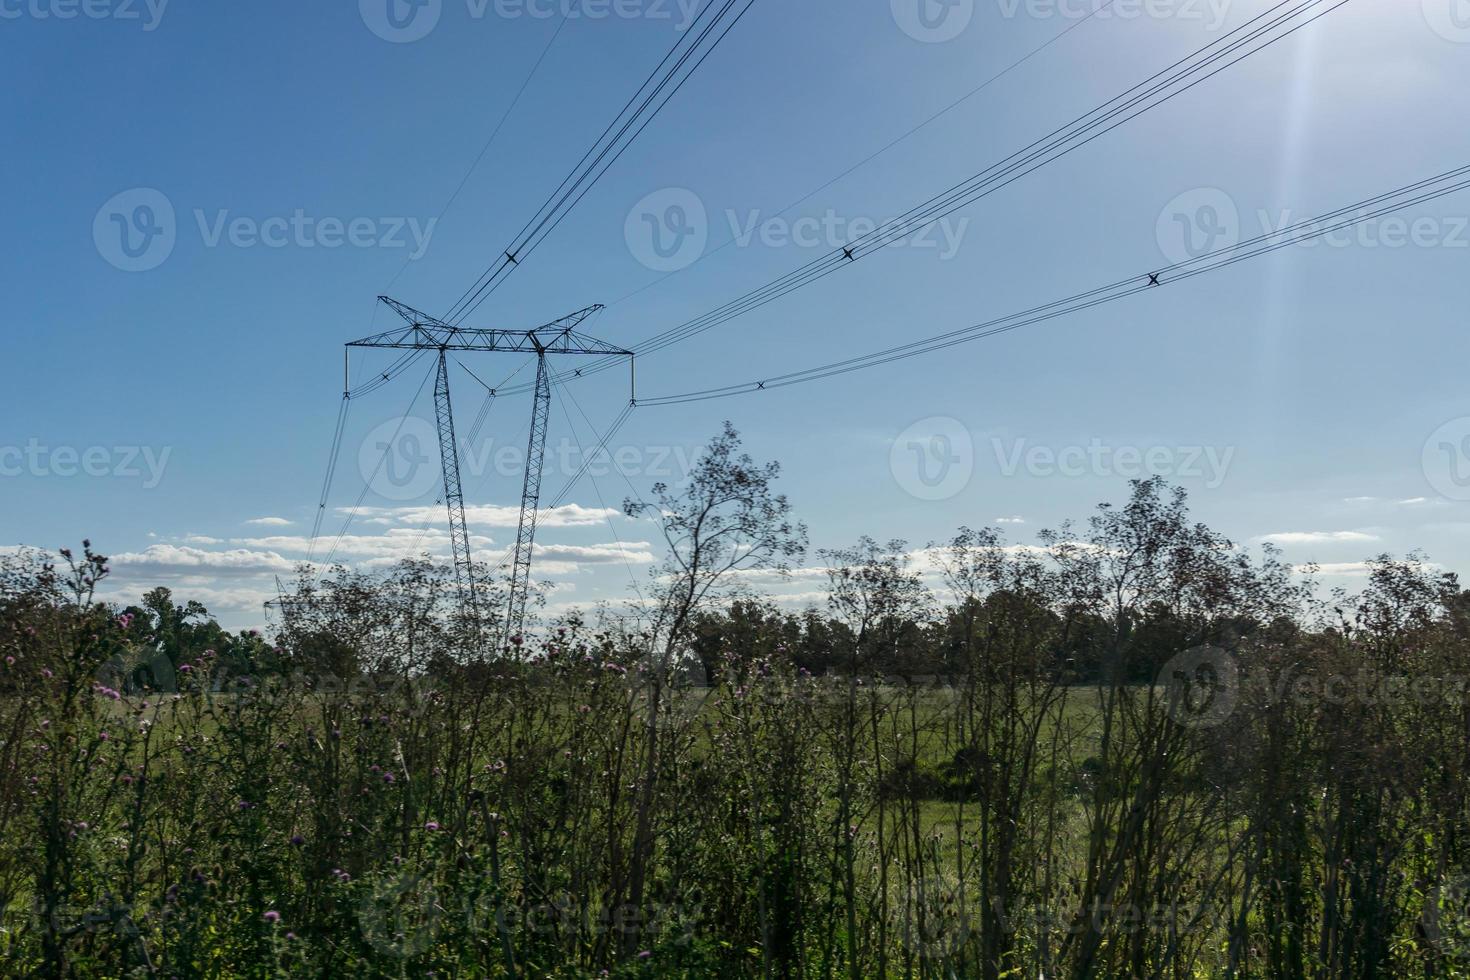 postes de eletricidade de alta tensão cruzando terras agrícolas foto